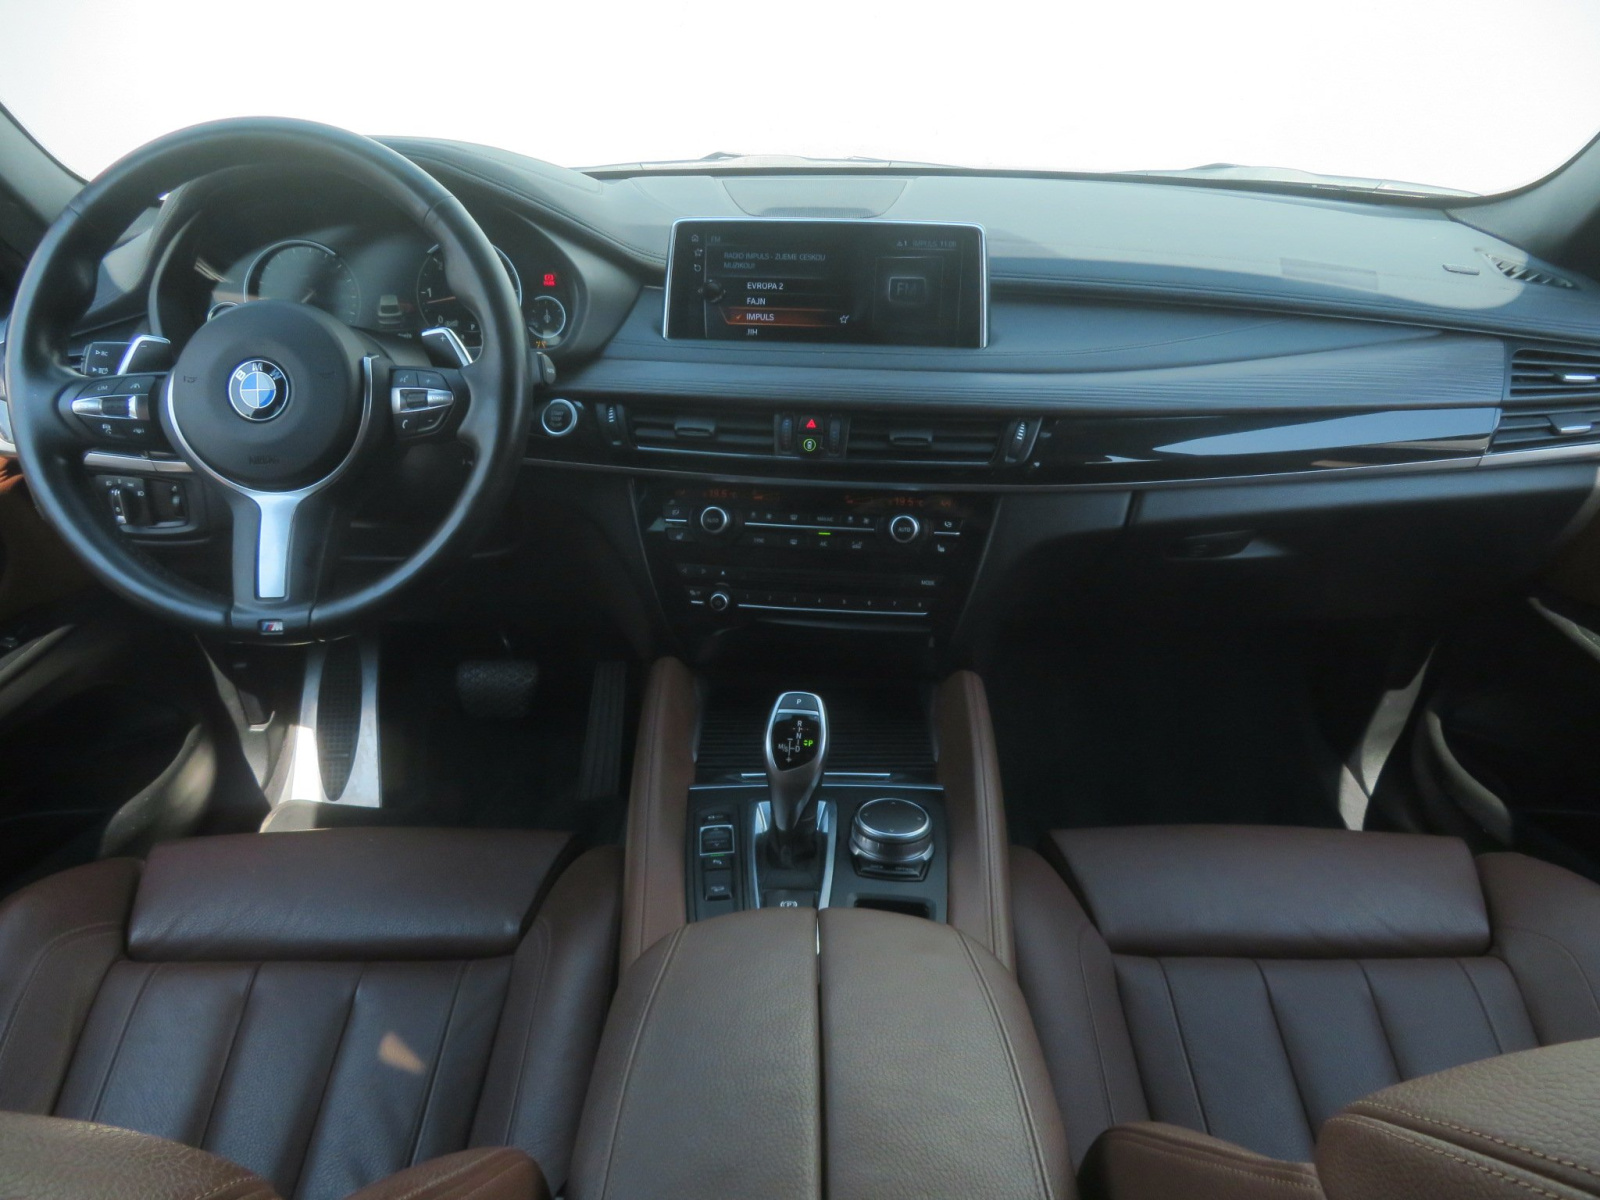 BMW X6, 2017, xDrive30d, 190kW, 4x4